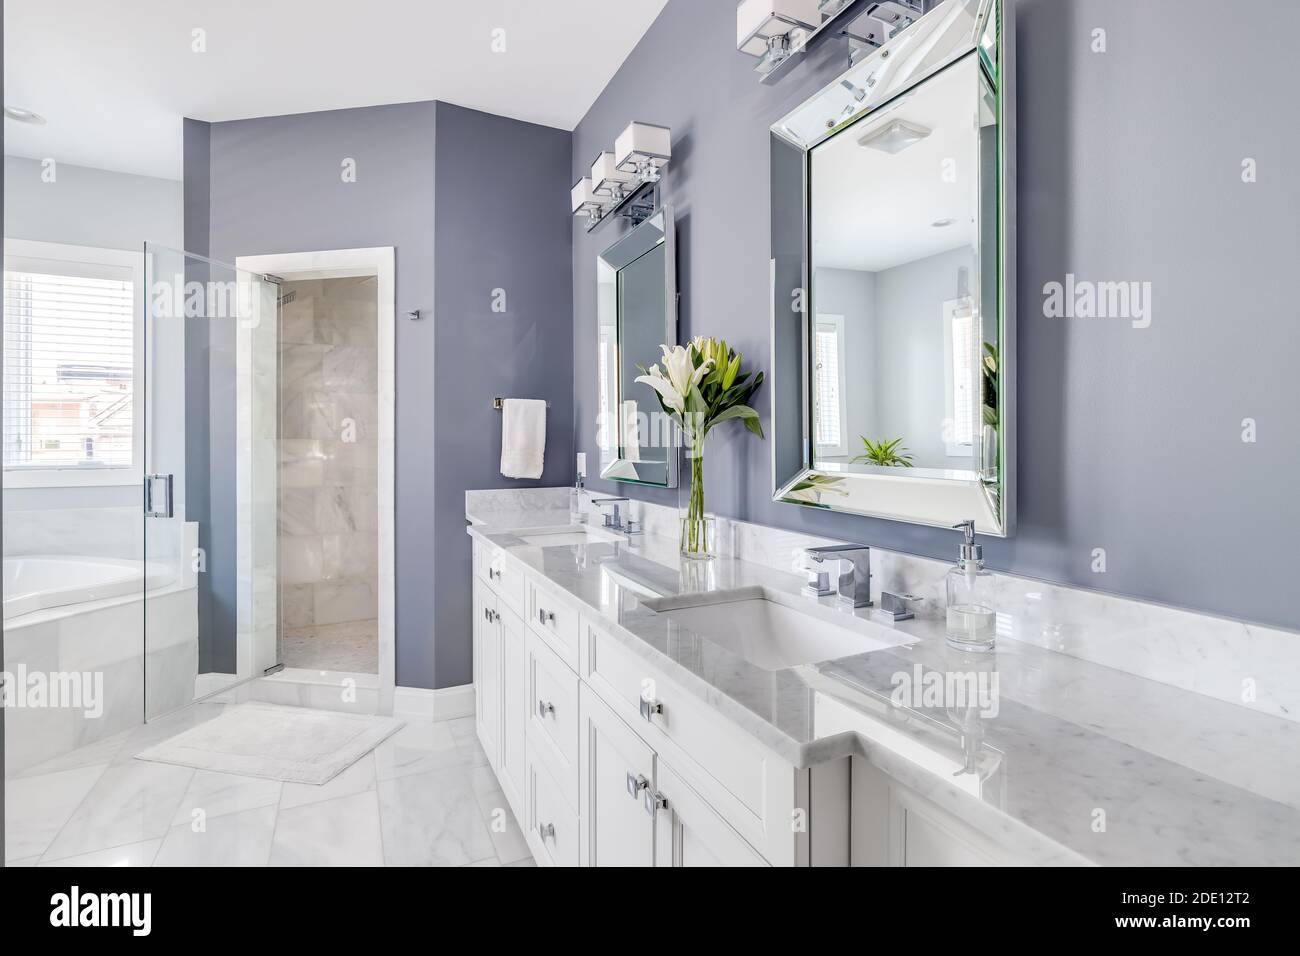 Una lussuosa stanza da bagno con pareti viola, un armadio bianco e un piano di lavoro, e dettagli in metallo cromato che guardano verso una cabina doccia piastrellata e una vasca idromassaggio. Foto Stock